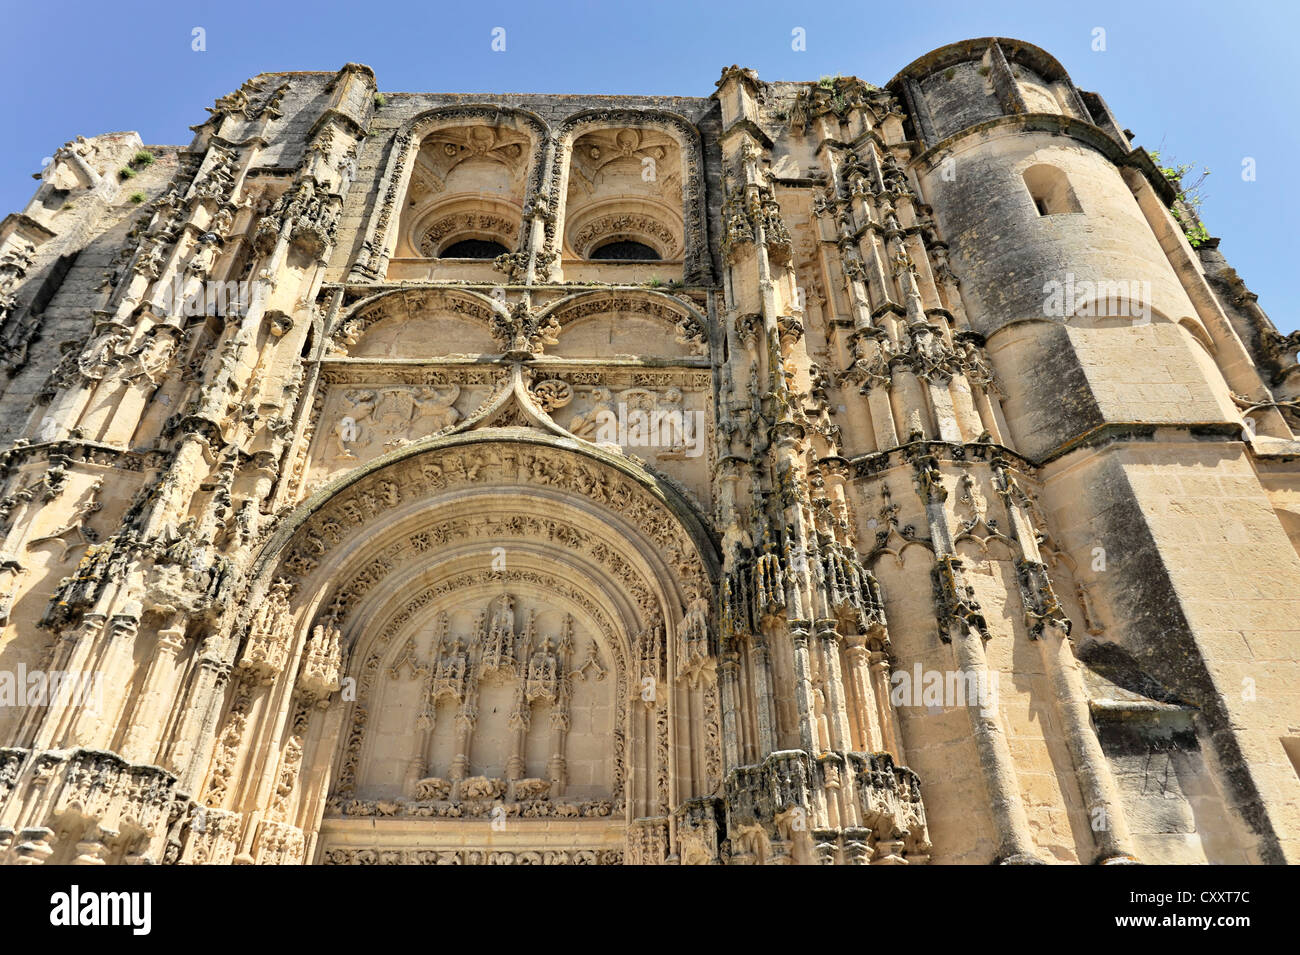 Basilica de Santa Maria de la Asuncion, Arcos de la Frontera, Cadiz province, Andalusia, Spain, Europe Stock Photo